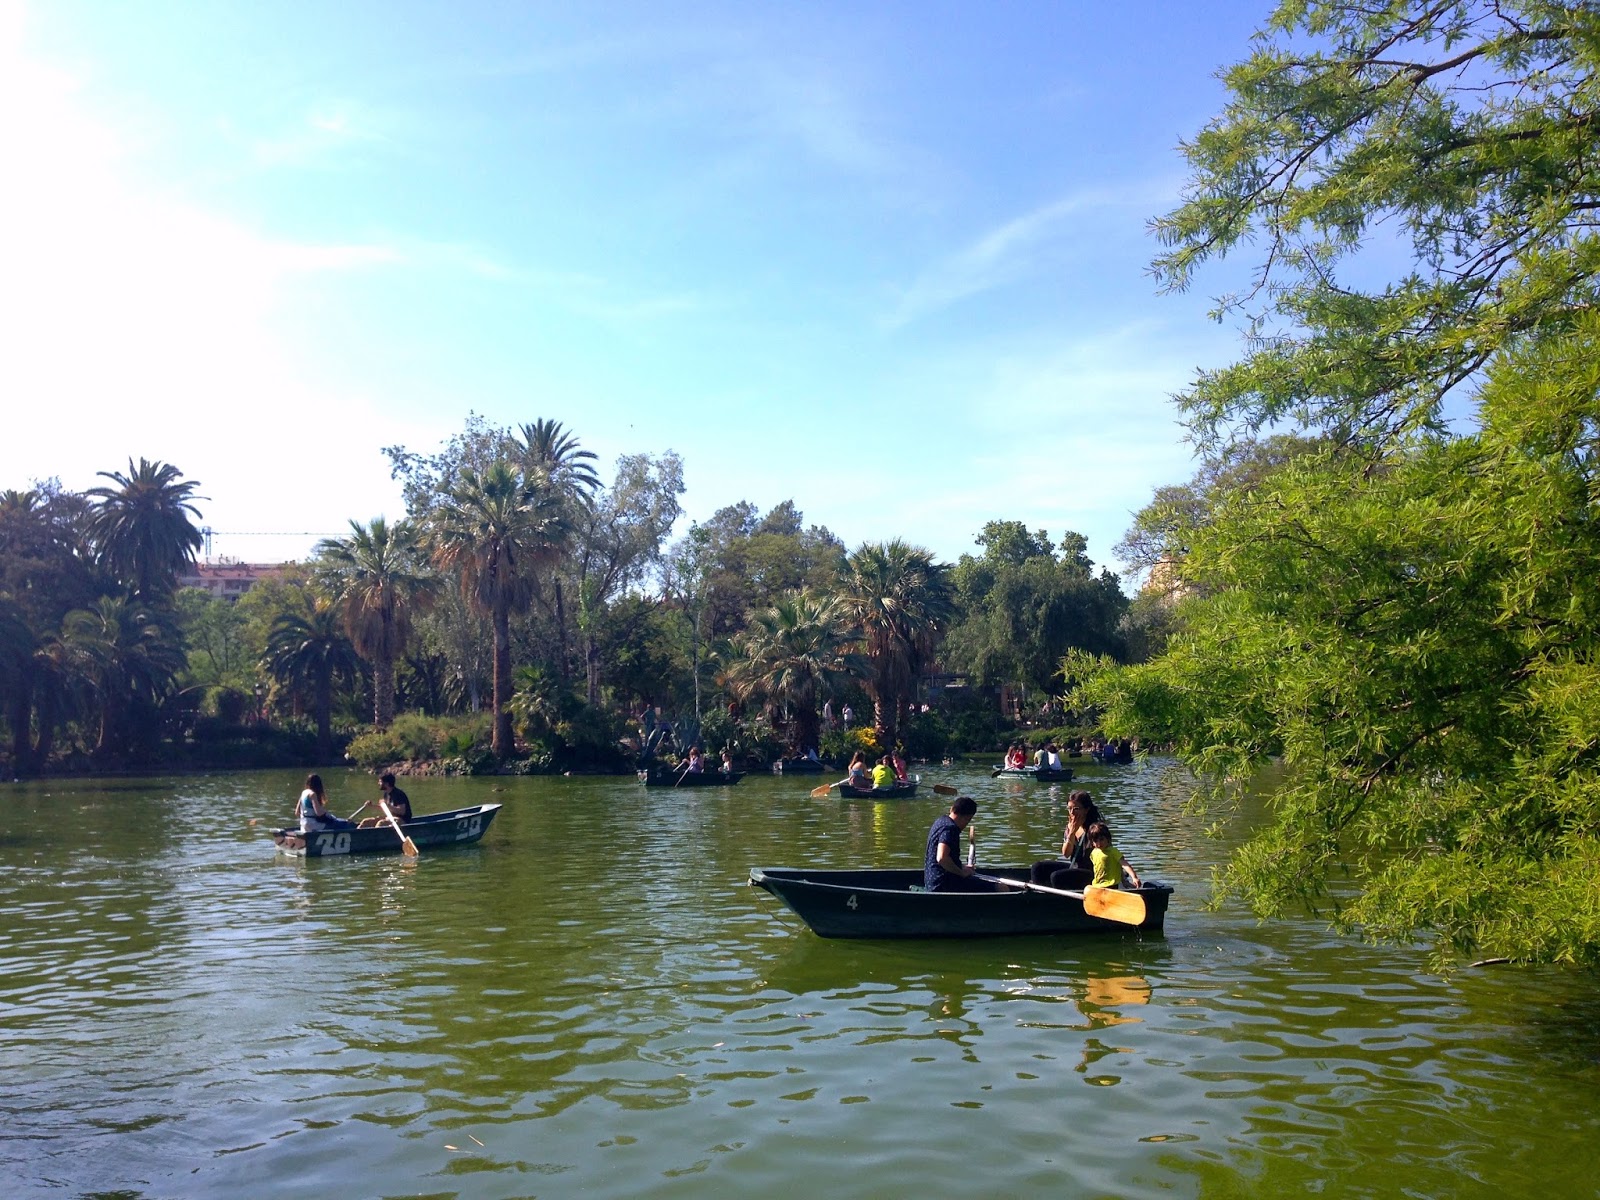 Parc de la ciutadella rowboat rental